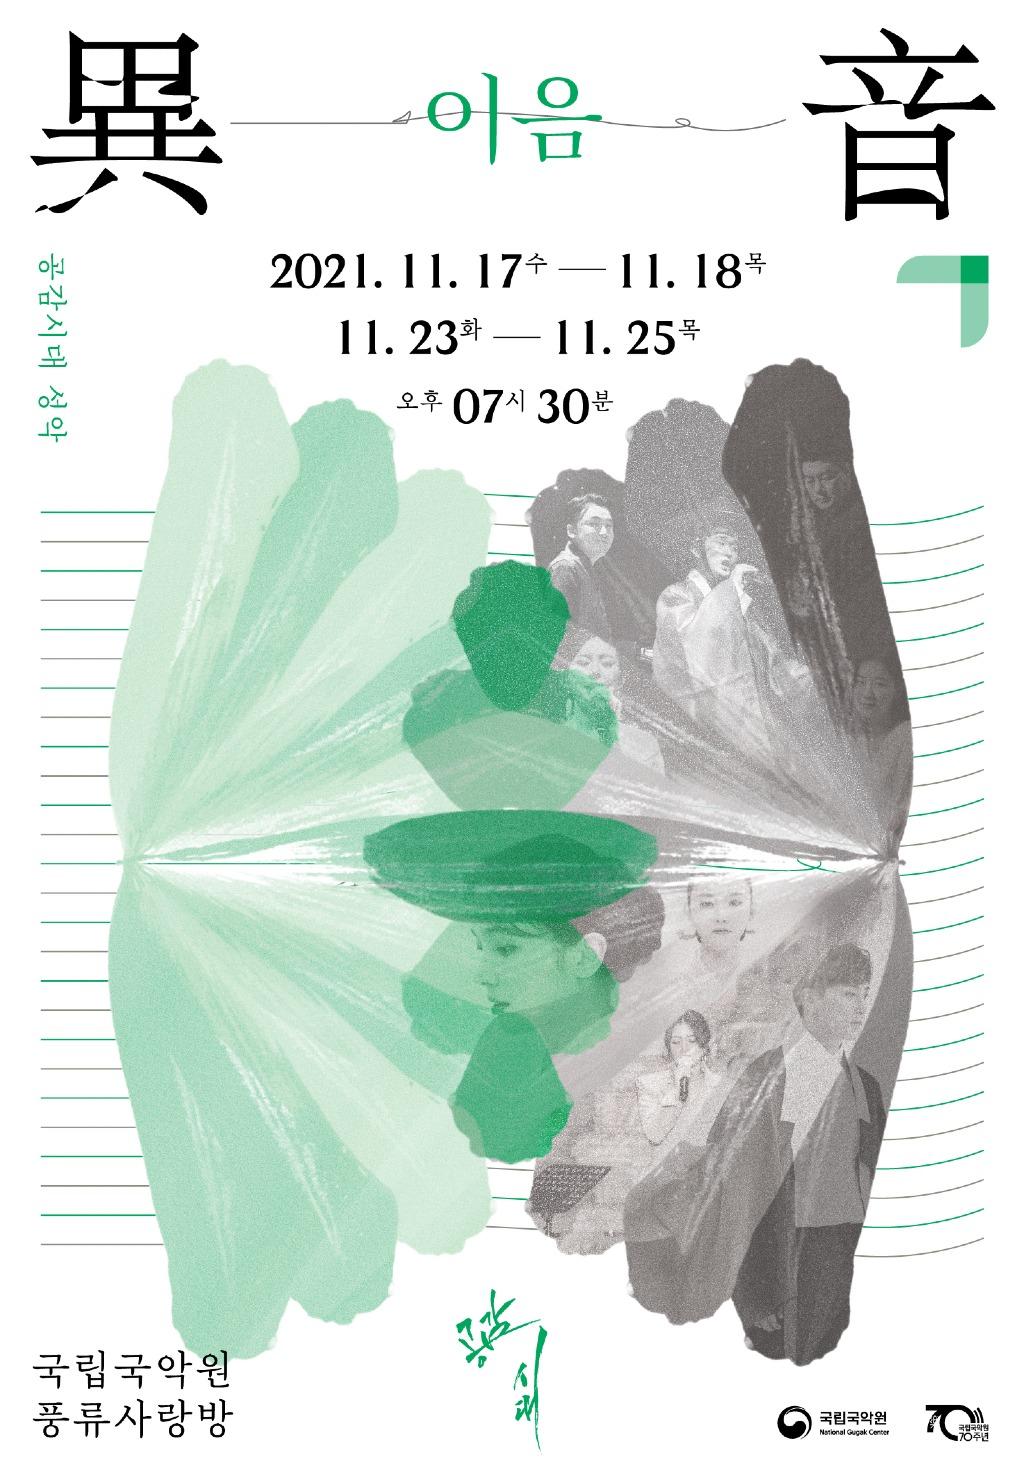 09_국립국악원_공감시대_성악_이음_포스터.jpg